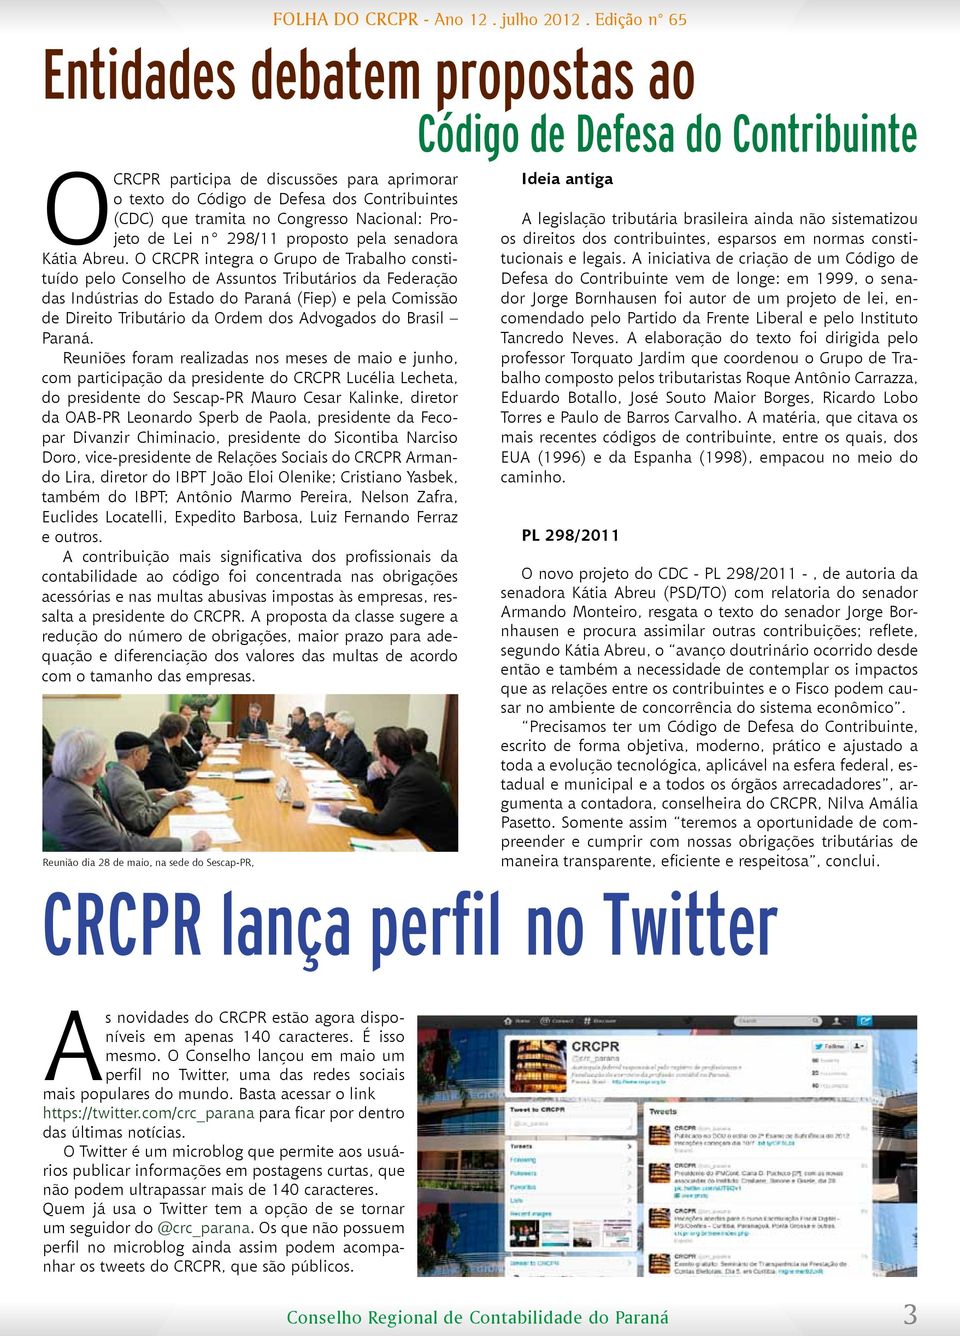 O CRCPR integra o Grupo de Trabalho constituído pelo Conselho de Assuntos Tributários da Federação das Indústrias do Estado do Paraná (Fiep) e pela Comissão de Direito Tributário da Ordem dos